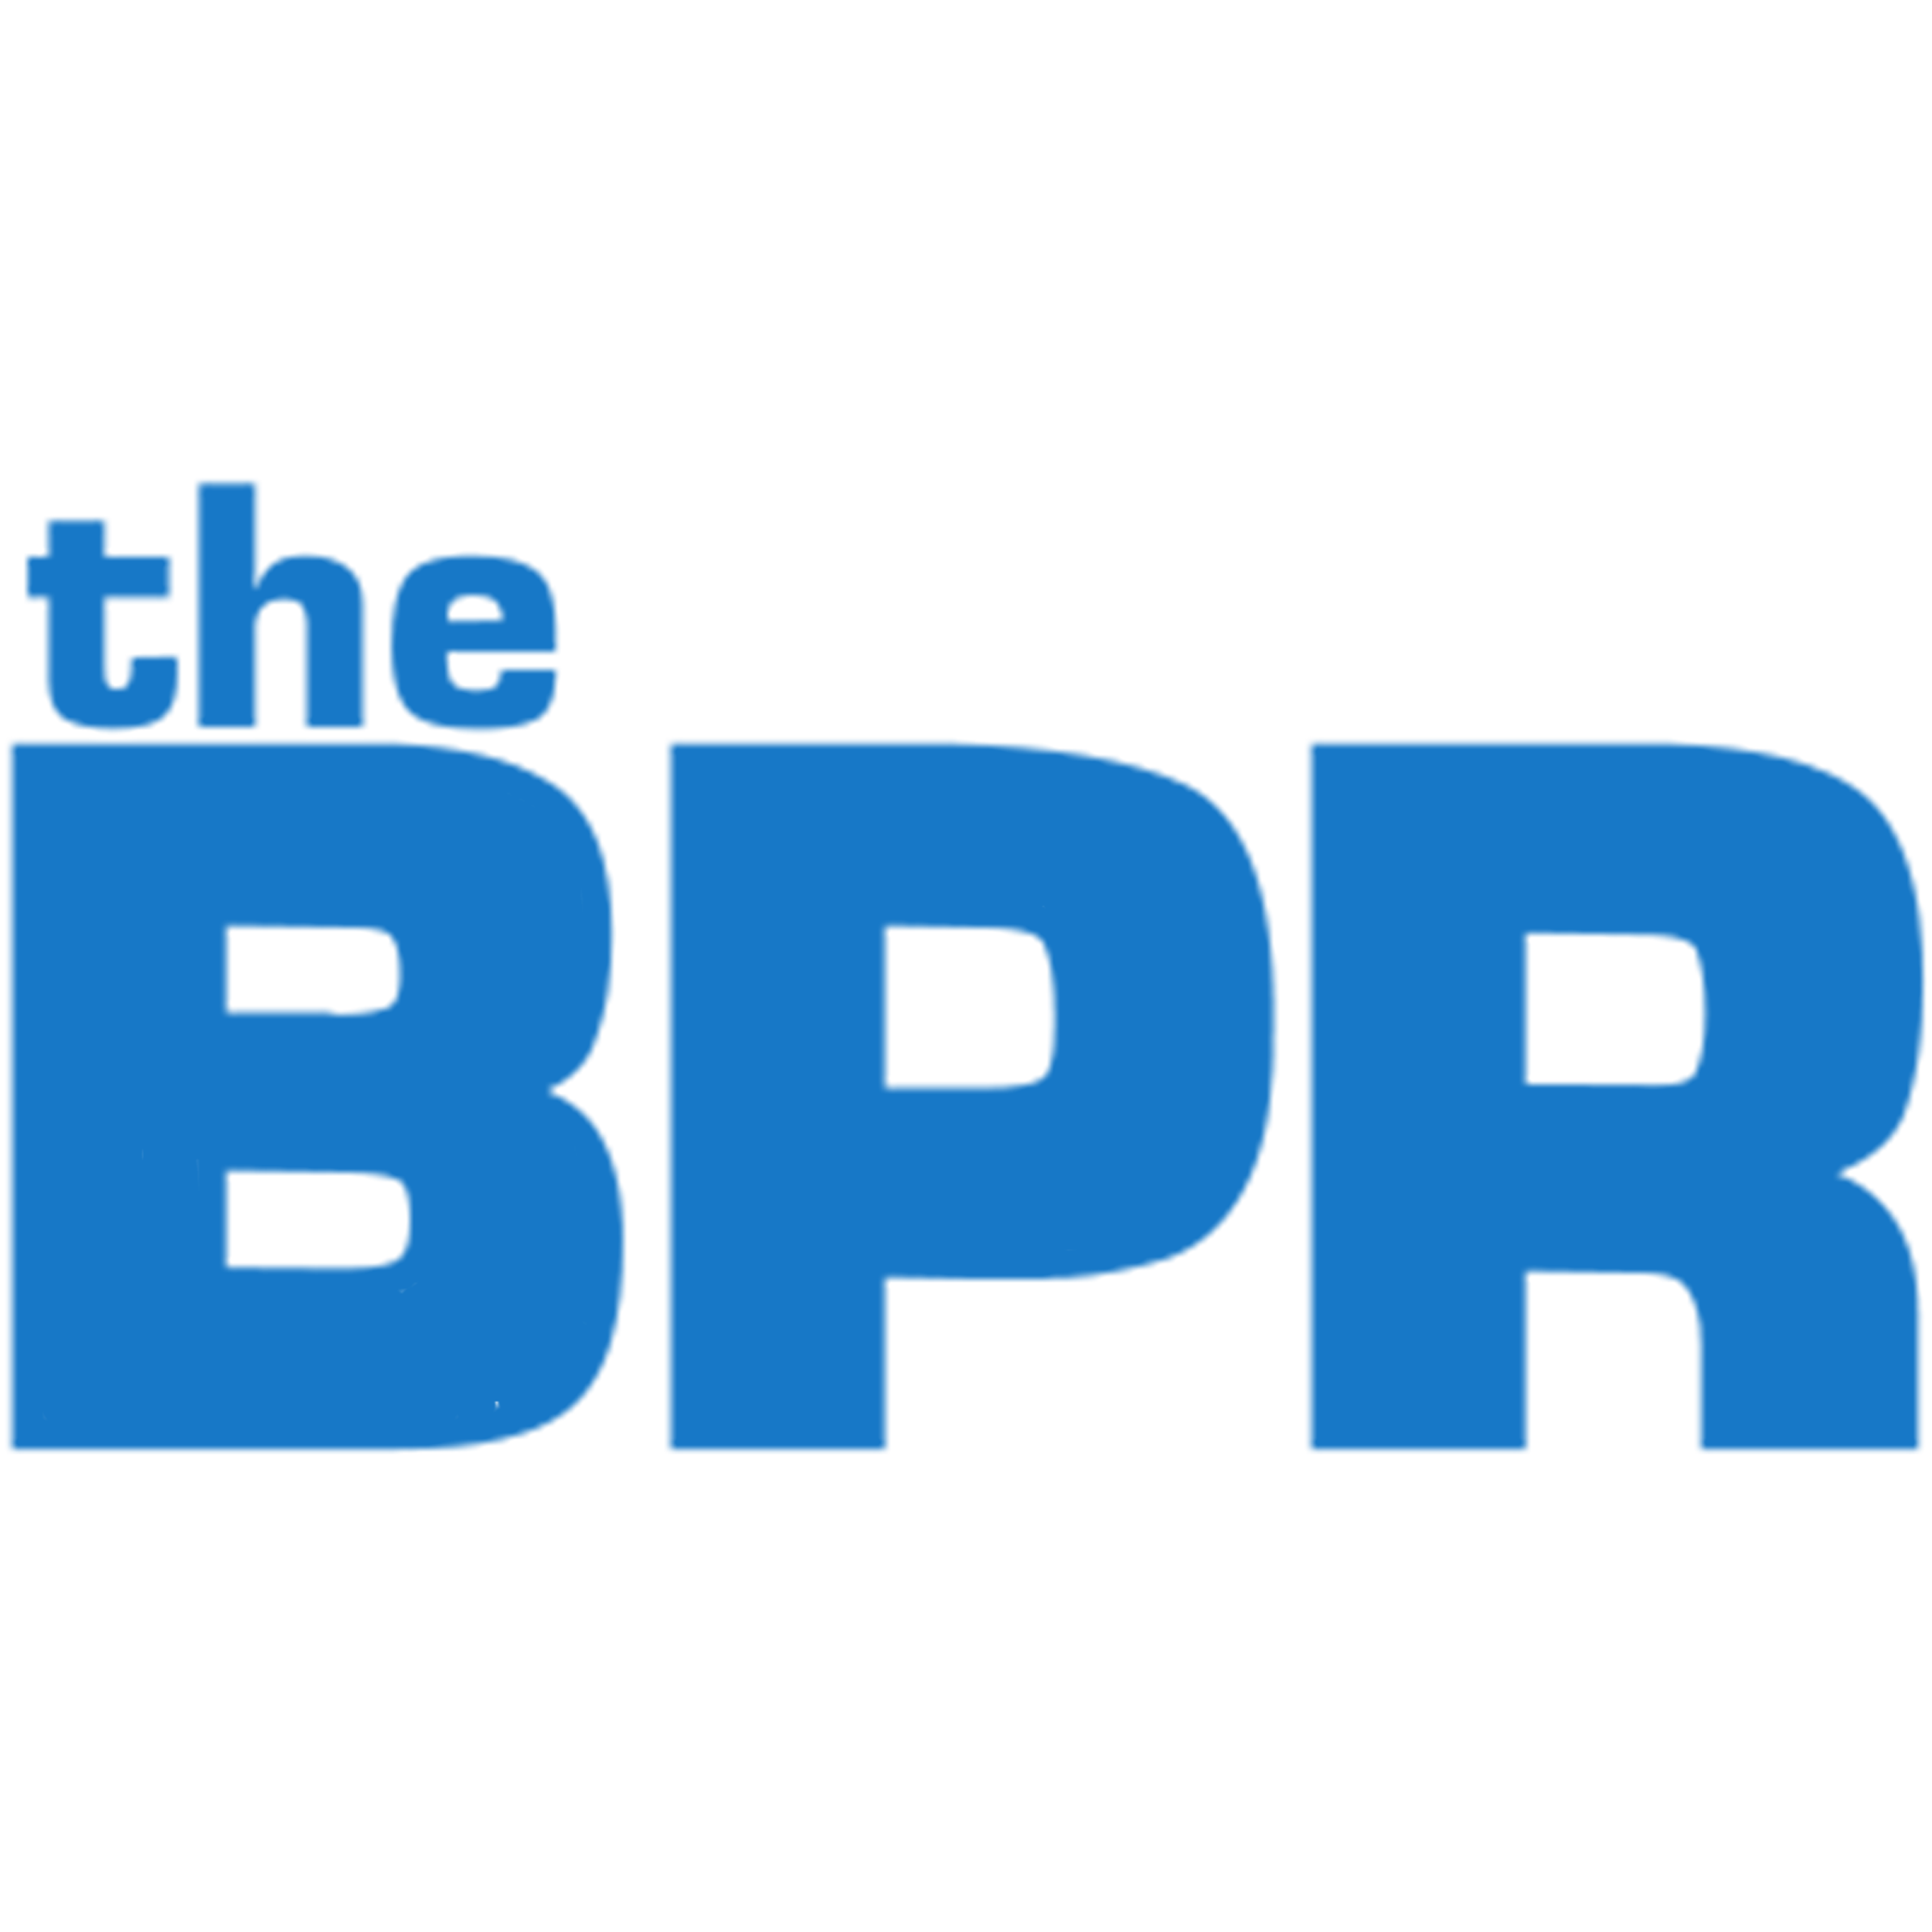 Salida óptima - El BPR - Repositorio de Procesos de Negocio